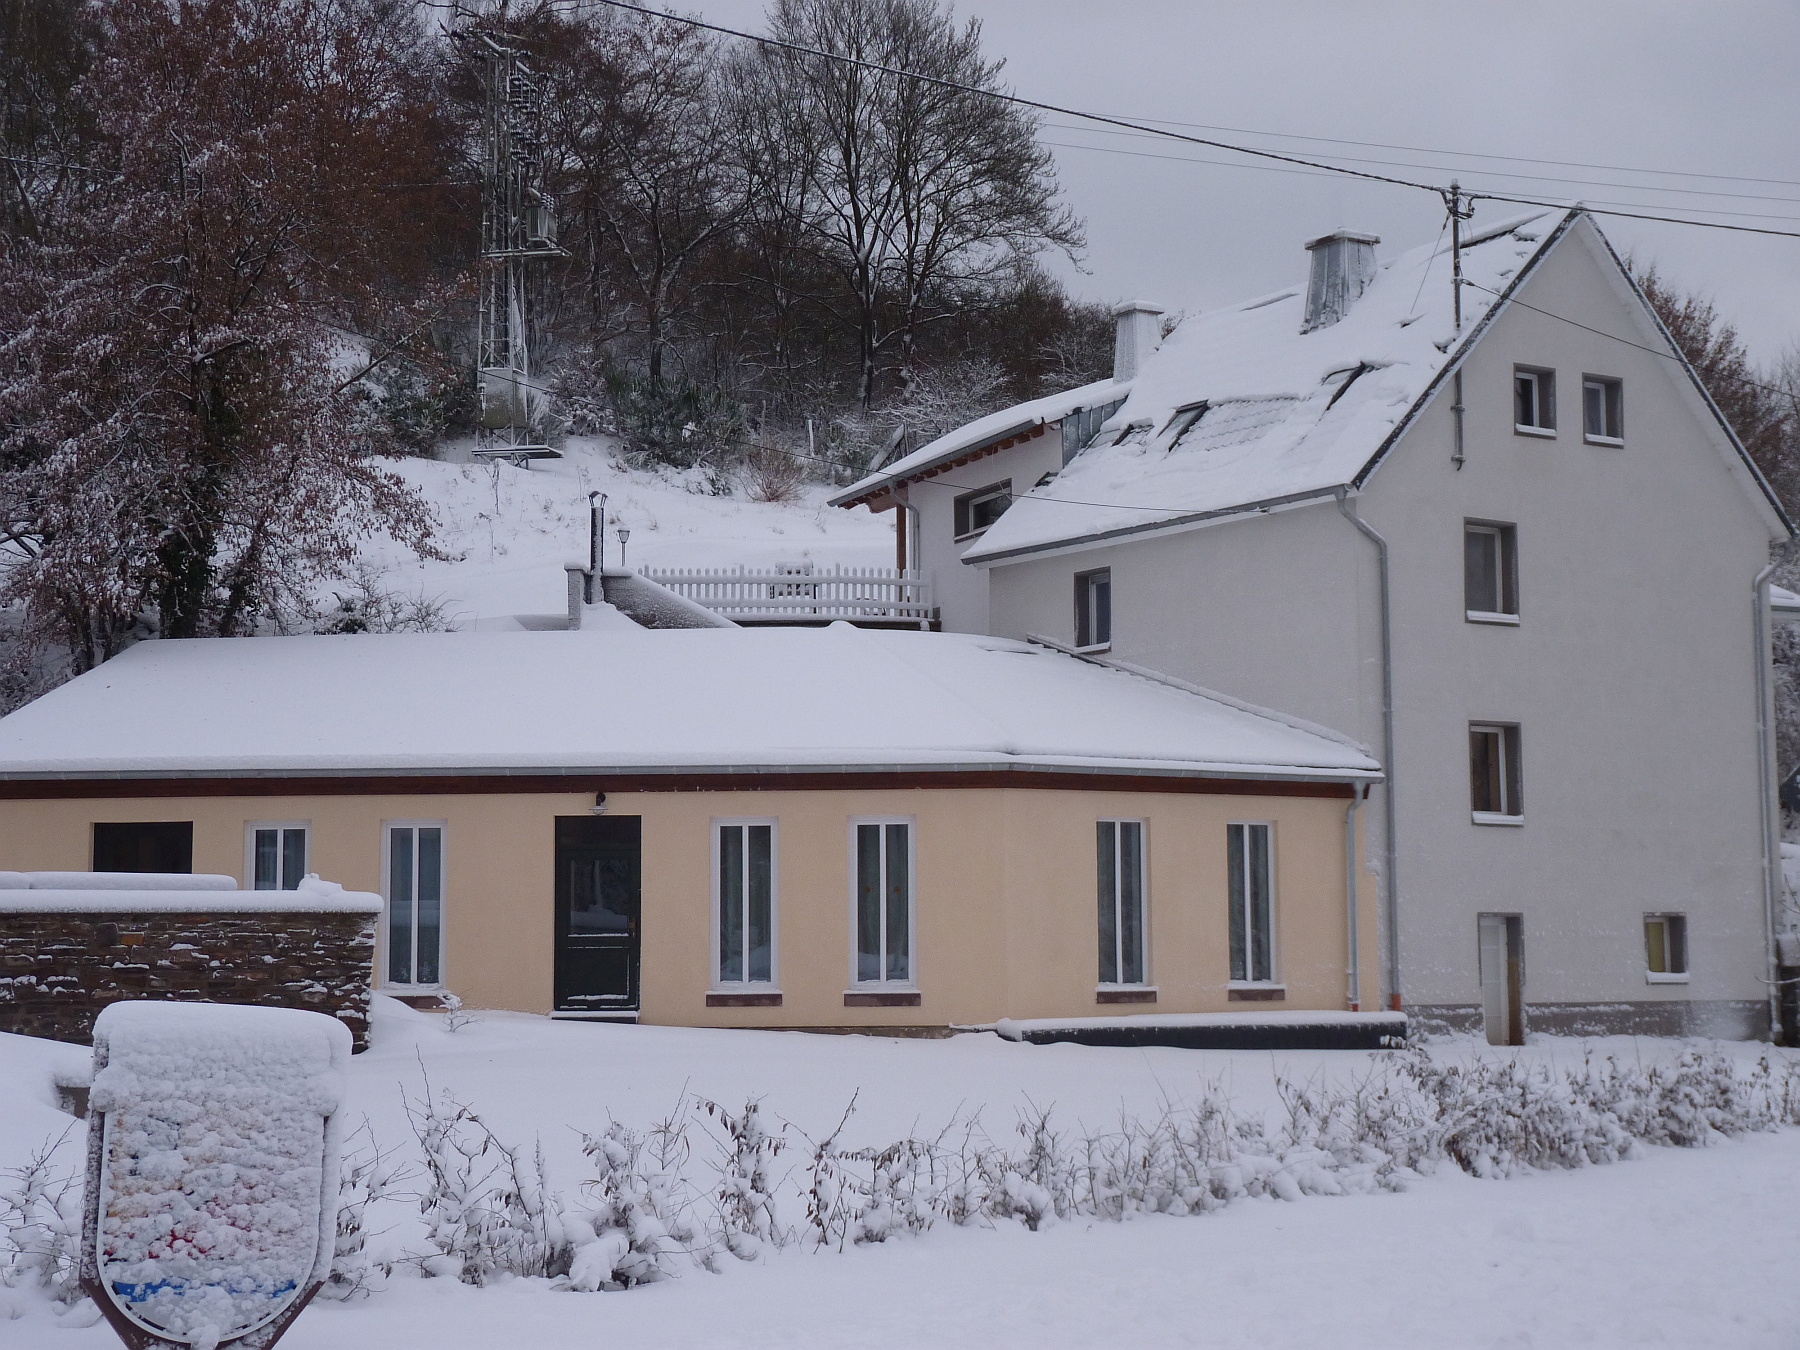 Eifel Gruppenferienhaus Engelsdorf im Schnee